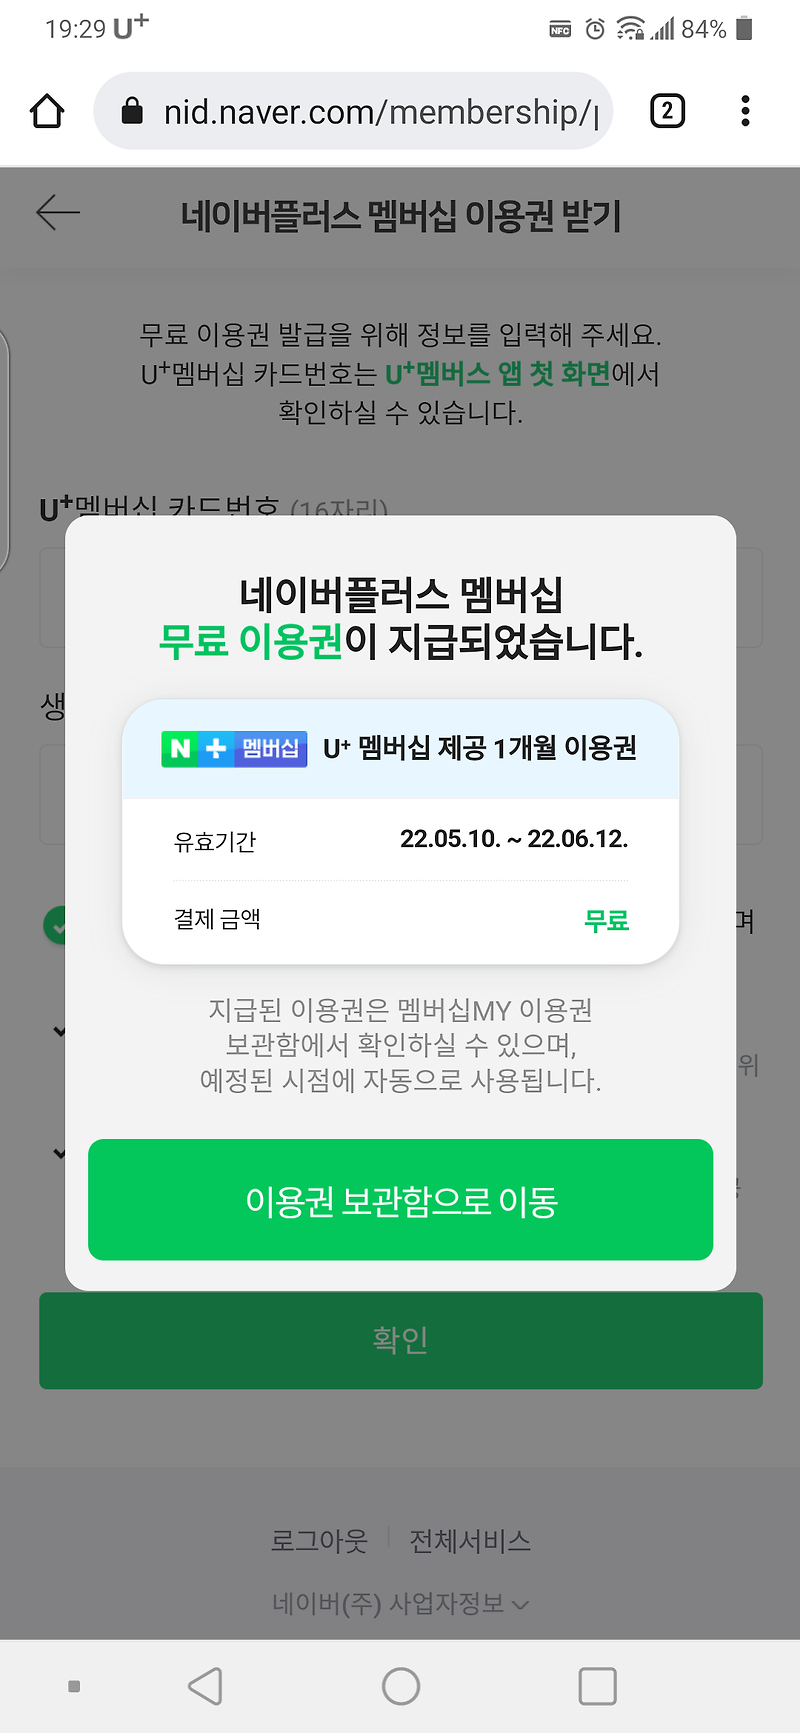 LG 유플러스 혜택 무료 네이버 플러스 멤버십 발급받기